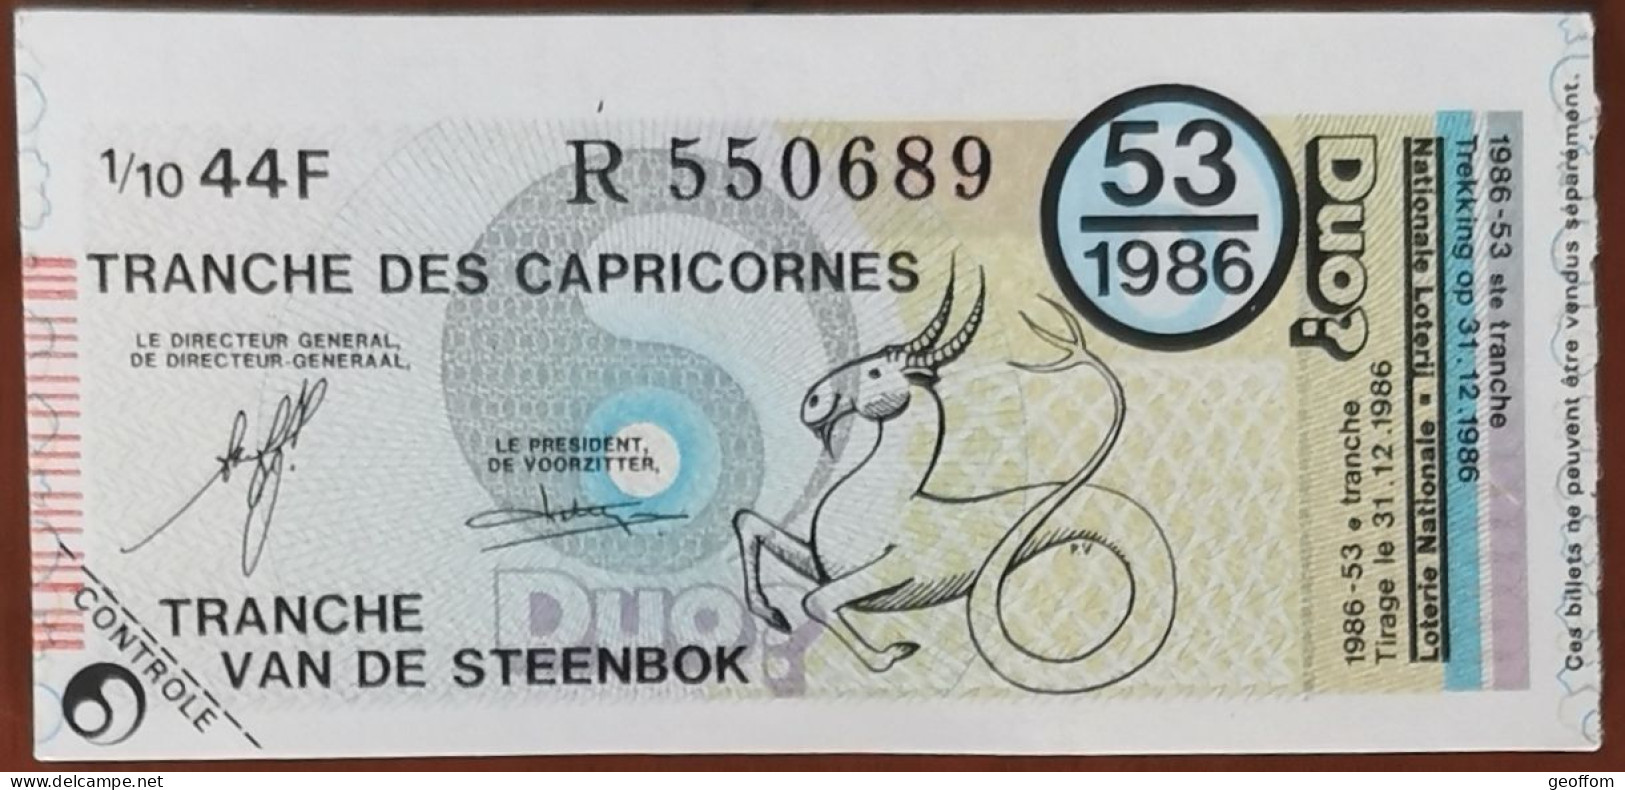 Billet De Loterie Nationale Belgique 1986 53e Tranche Des Capricorne - 31-12-1986 - Billetes De Lotería